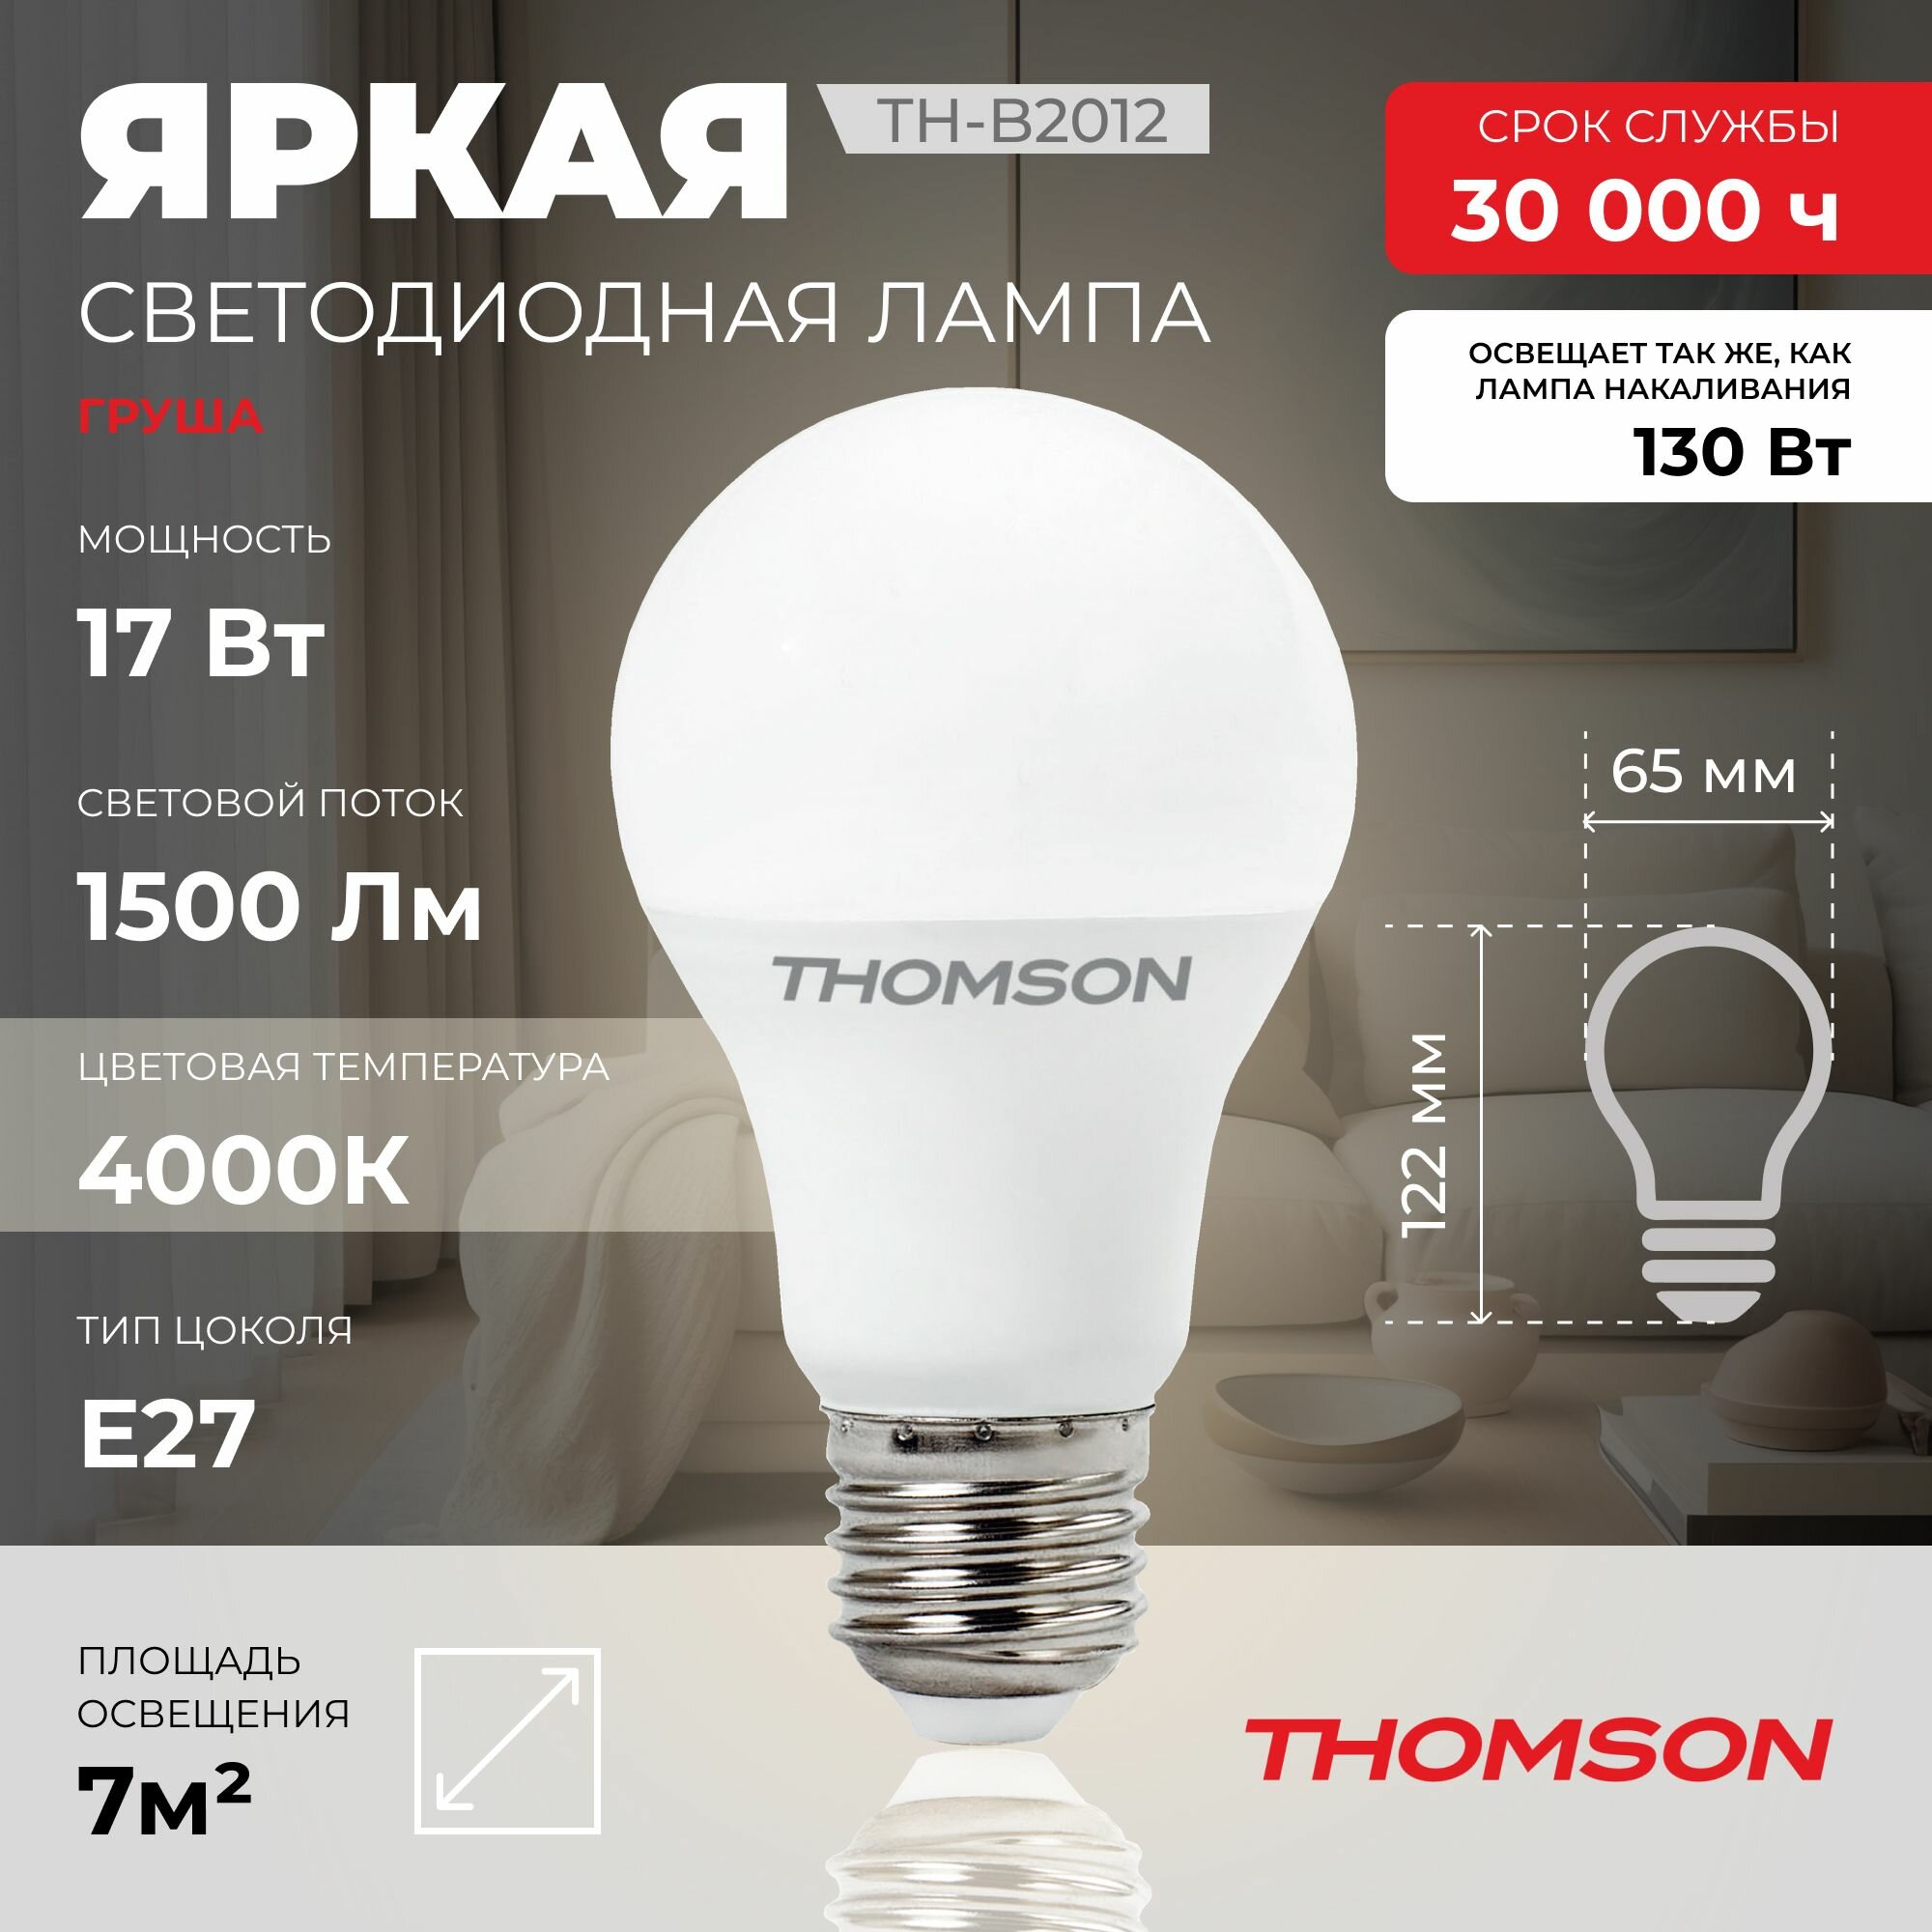 Лампочка Thomson TH-B2012 17 Вт, E27, 4000К, груша, нейтральный белый свет